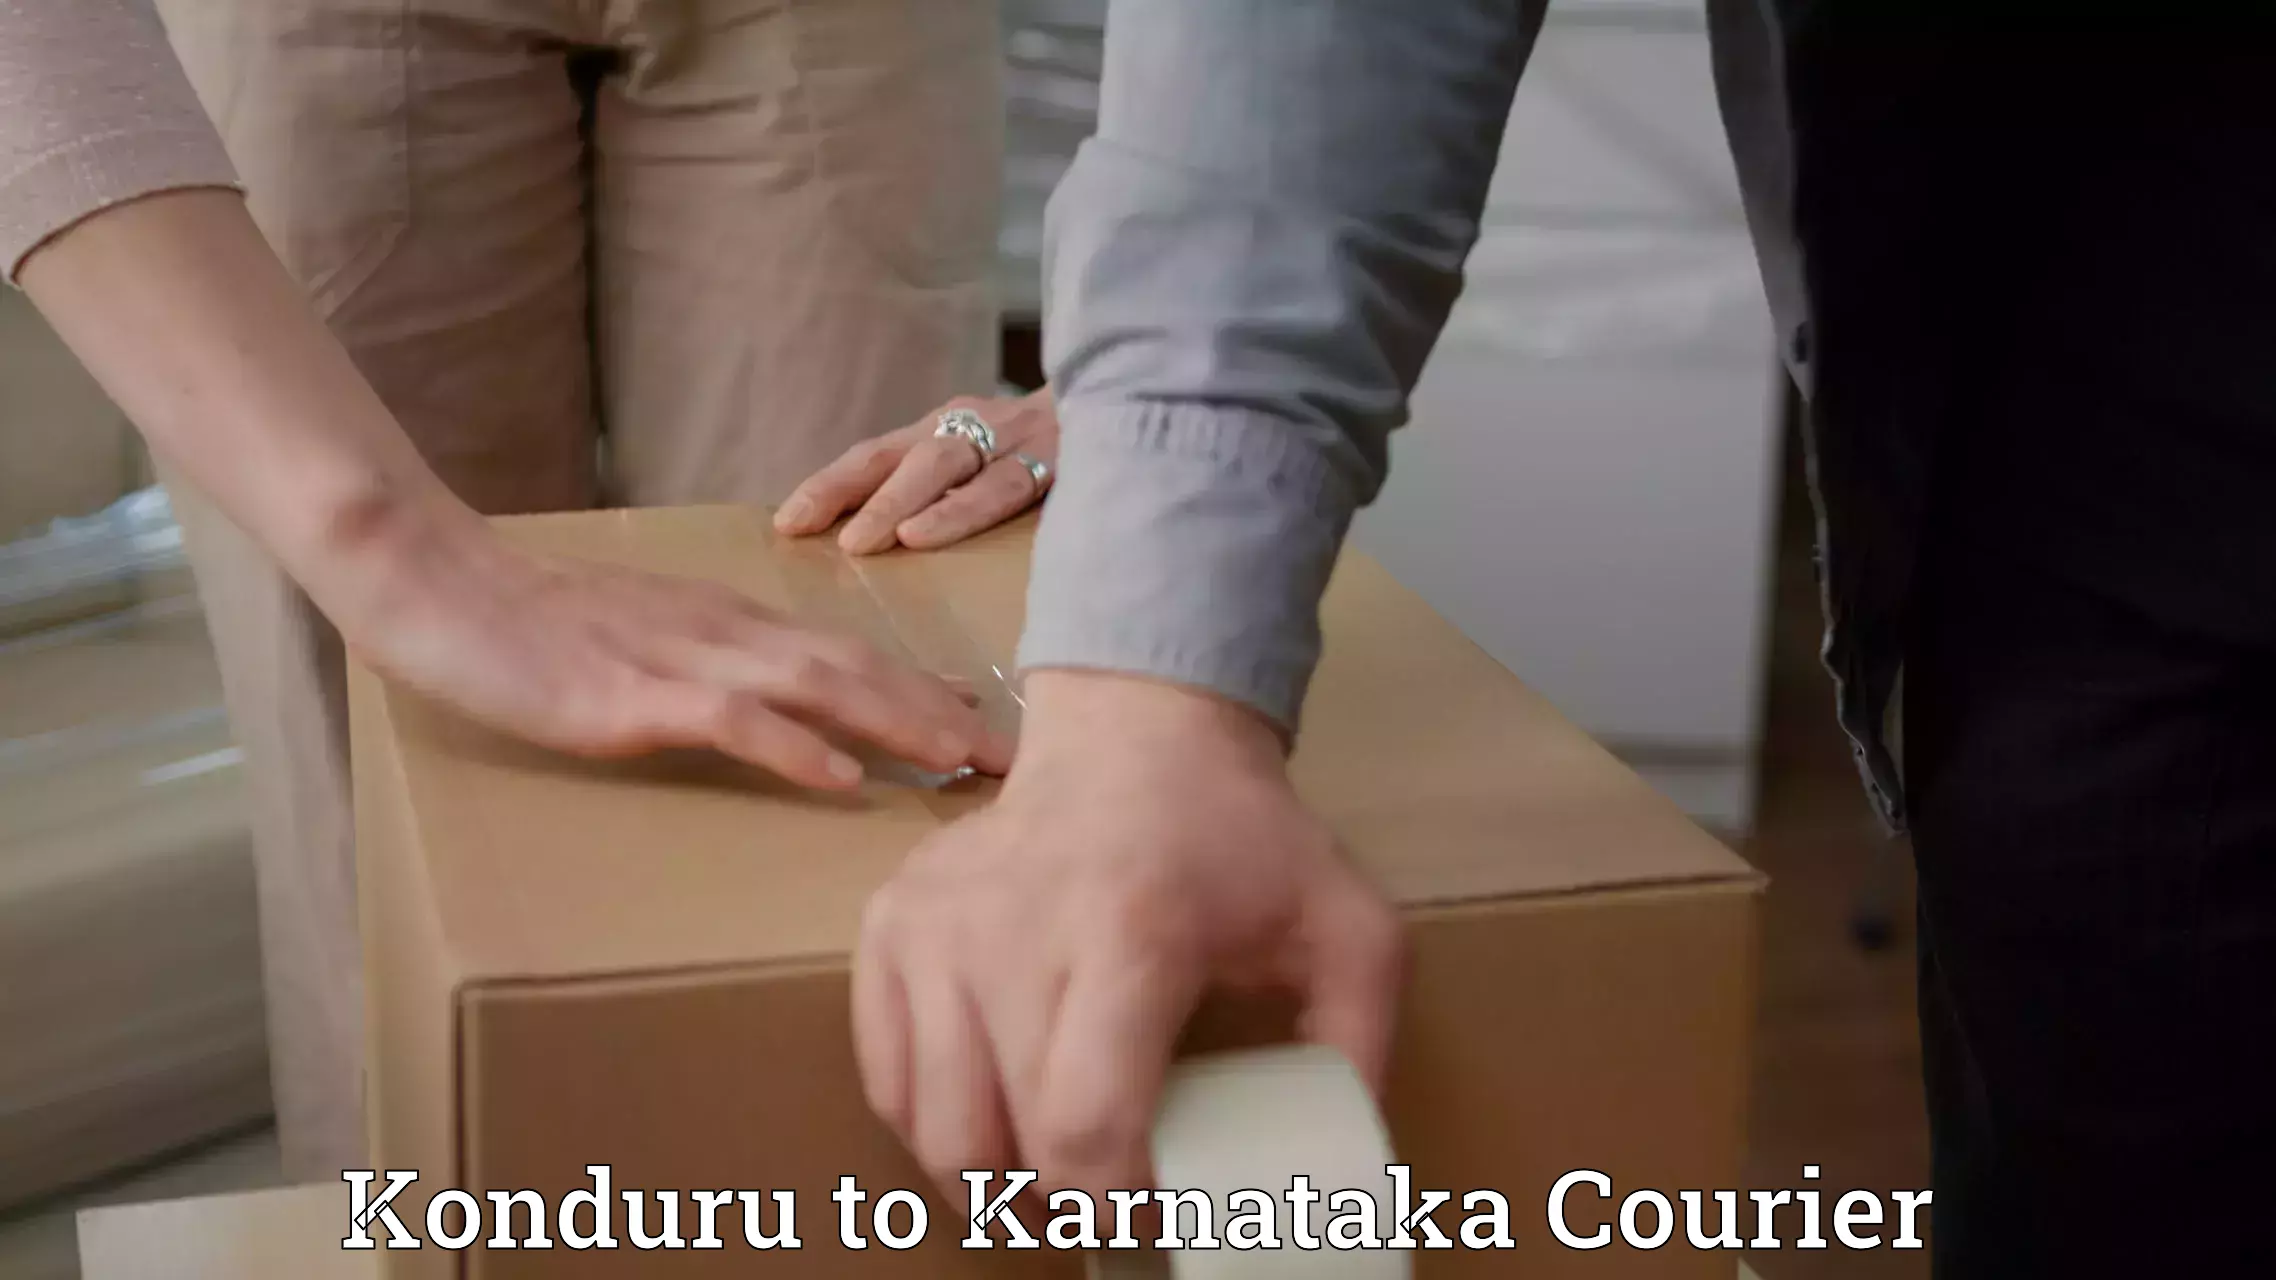 Efficient logistics management Konduru to Kotturu